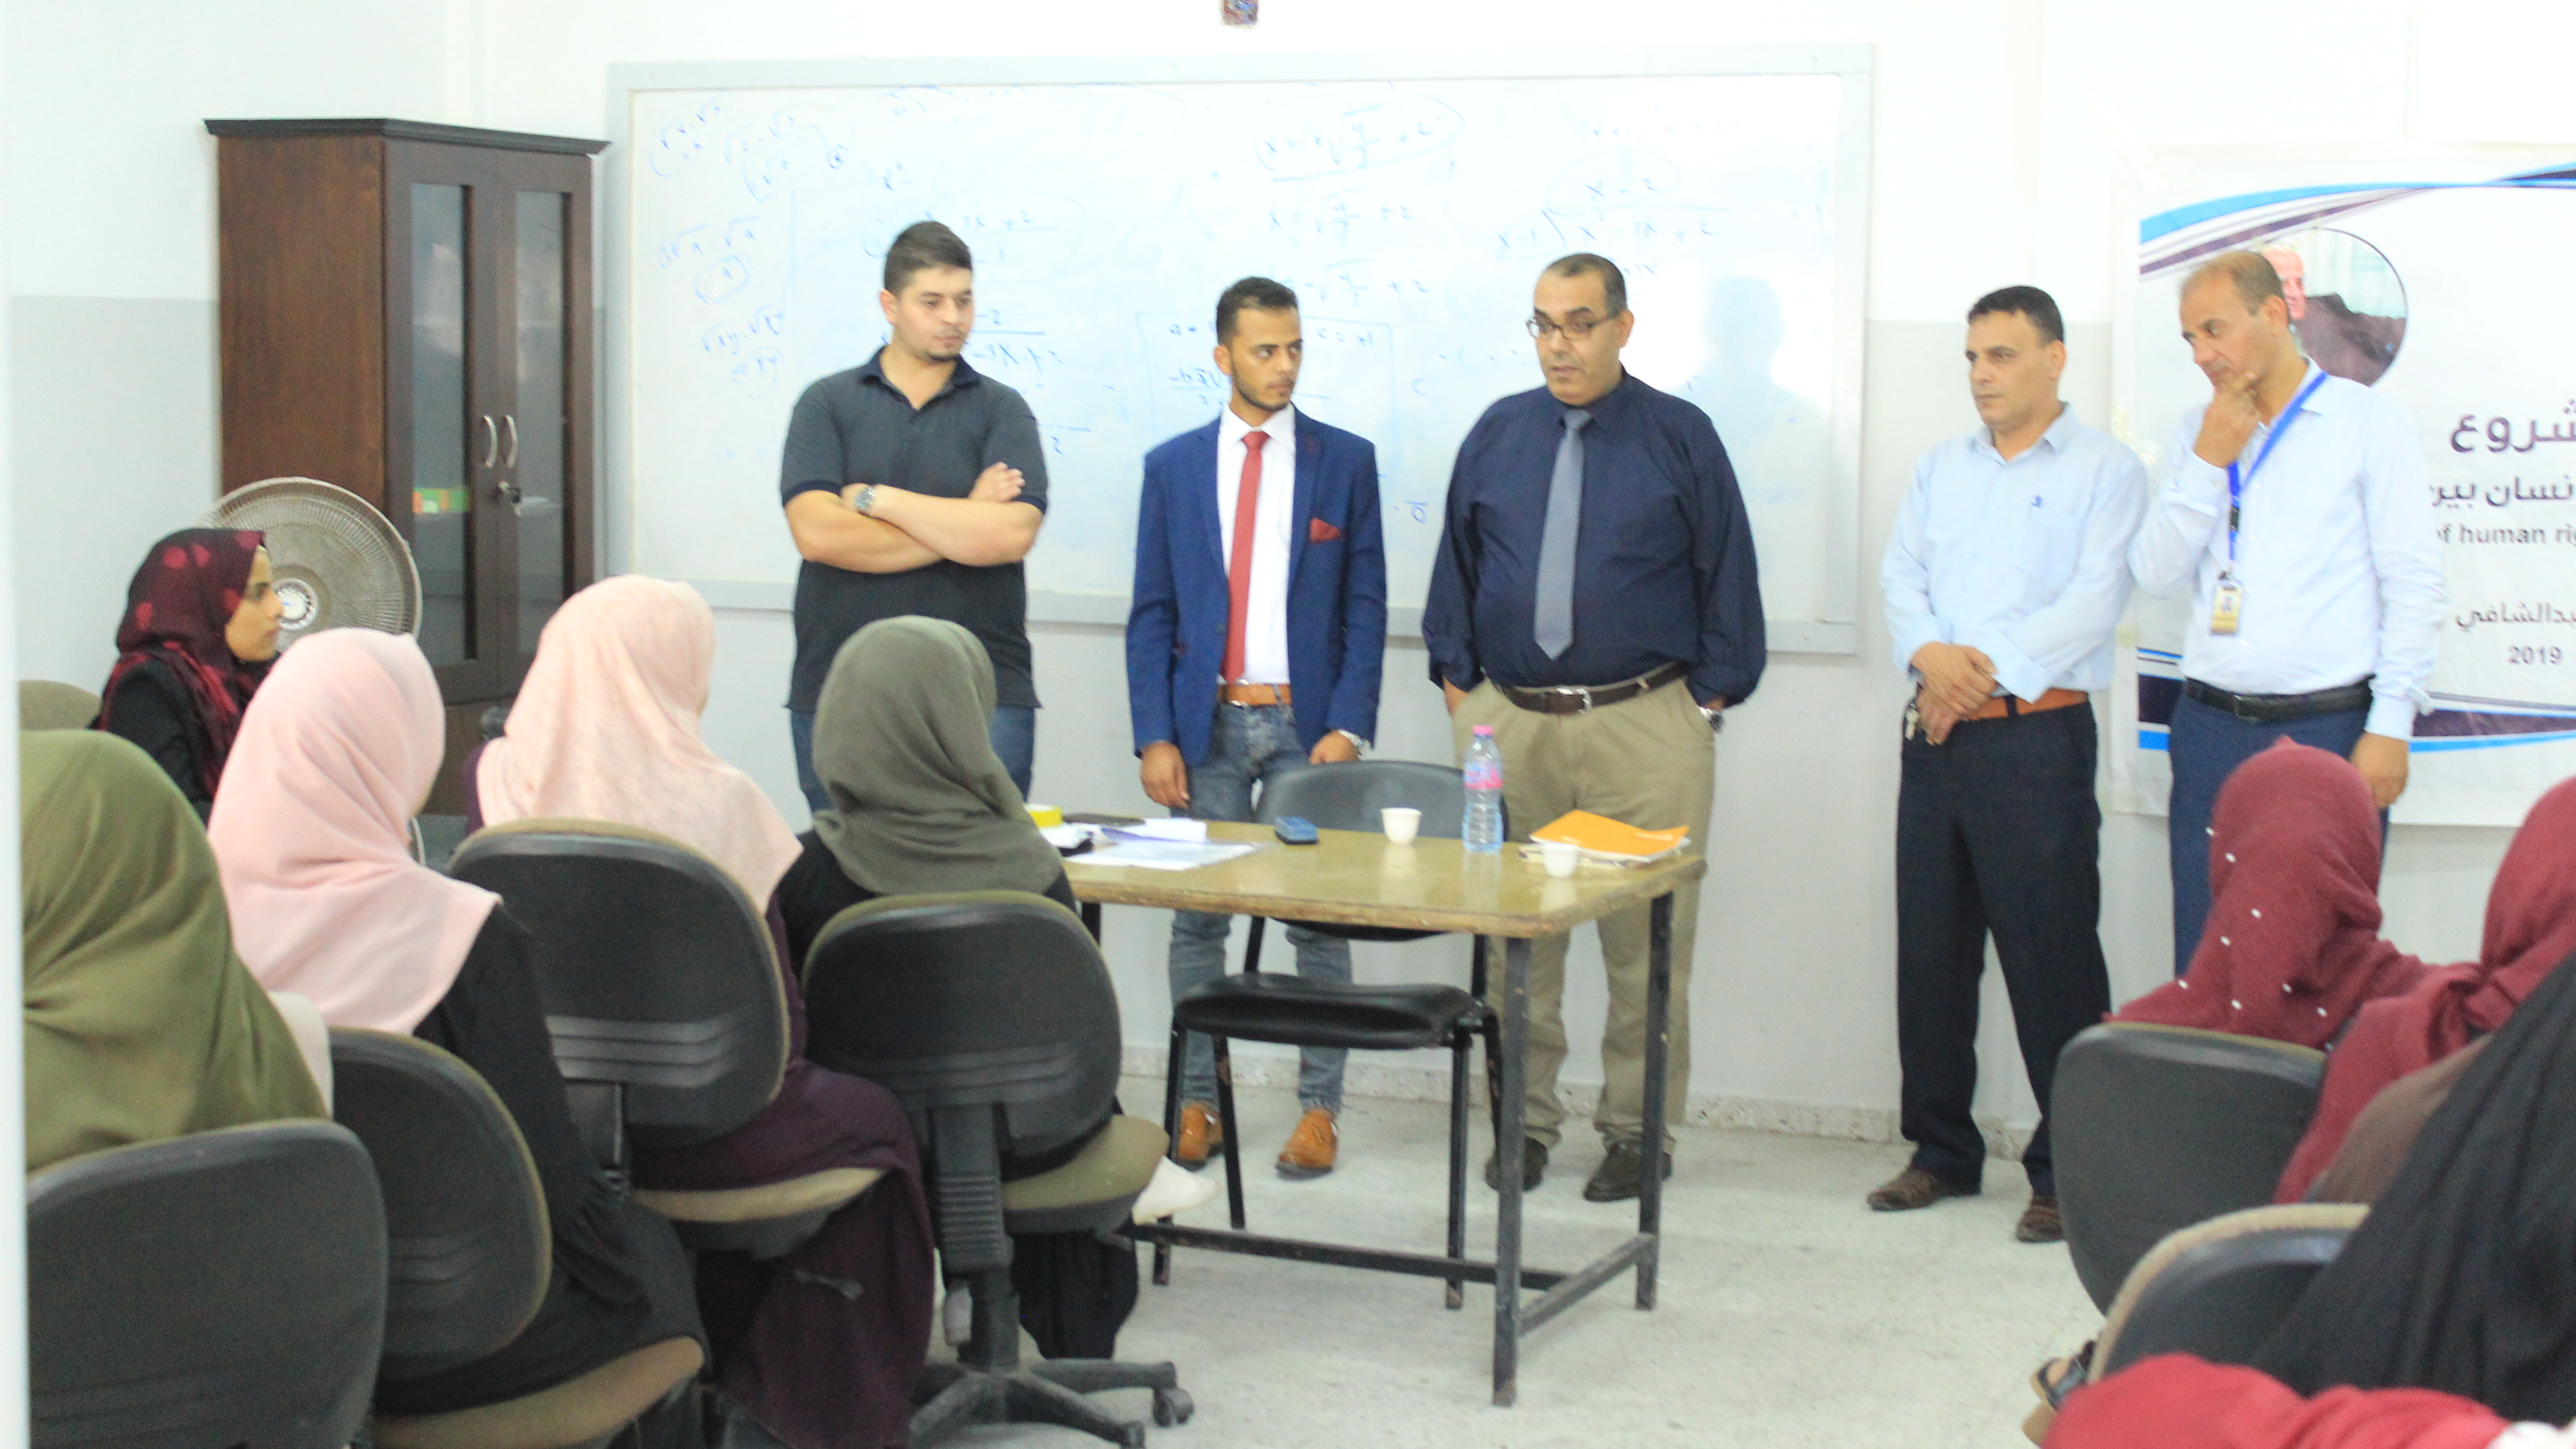 جامعة الاقصى ومركز حيدر عبد الشافي  يختتمان سلسلة من اللقاءات التثقيفية حول حقوق الانسان بين أوساط الشباب